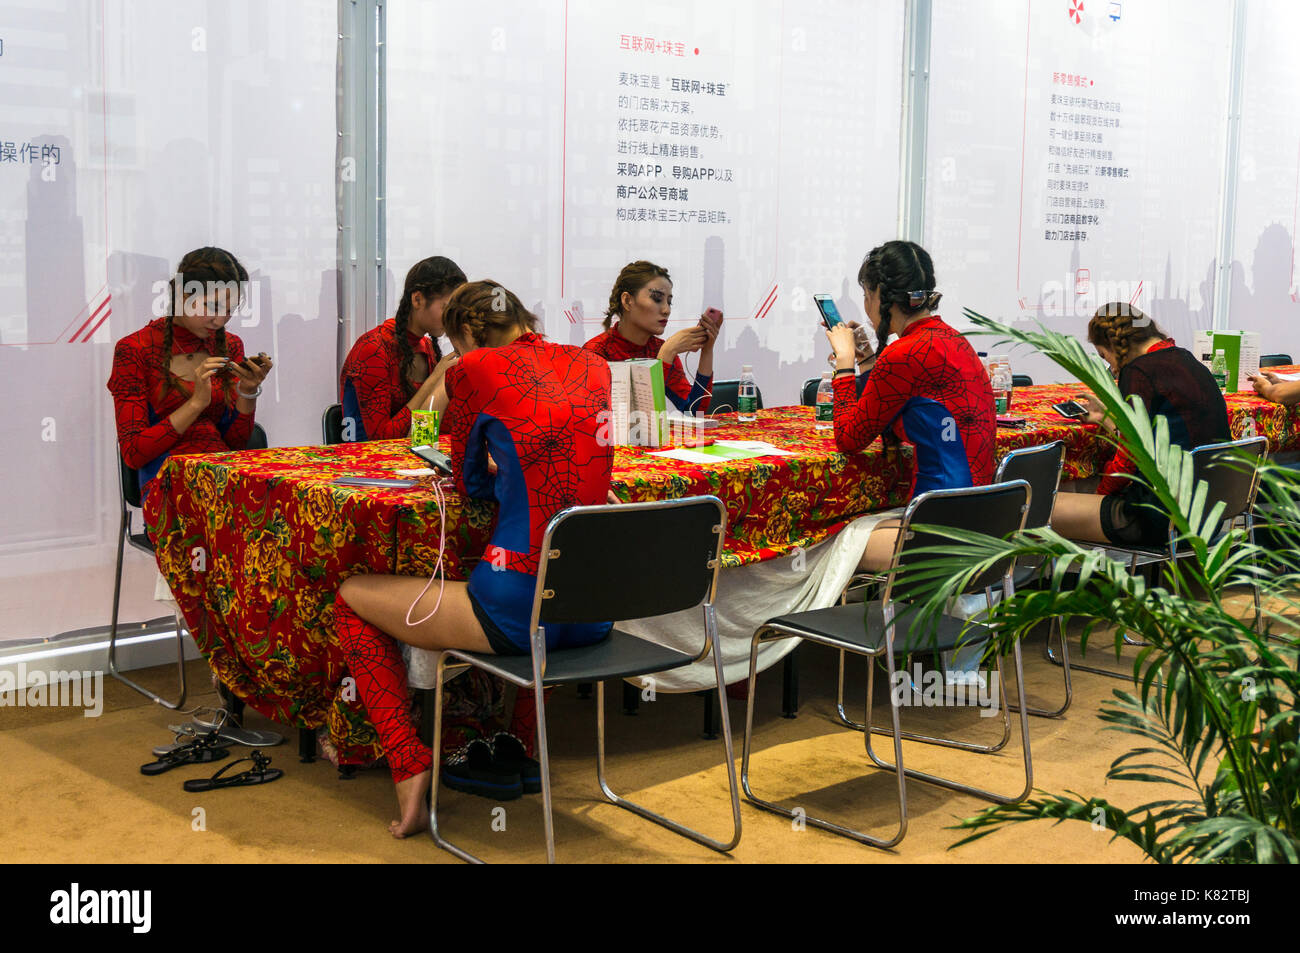 Mädchen in Spiderman Outfits, spielen mit Smartphones zu einem kulturellen chinesischen Messe in Shenzhen, Guangdong, China Stockfoto